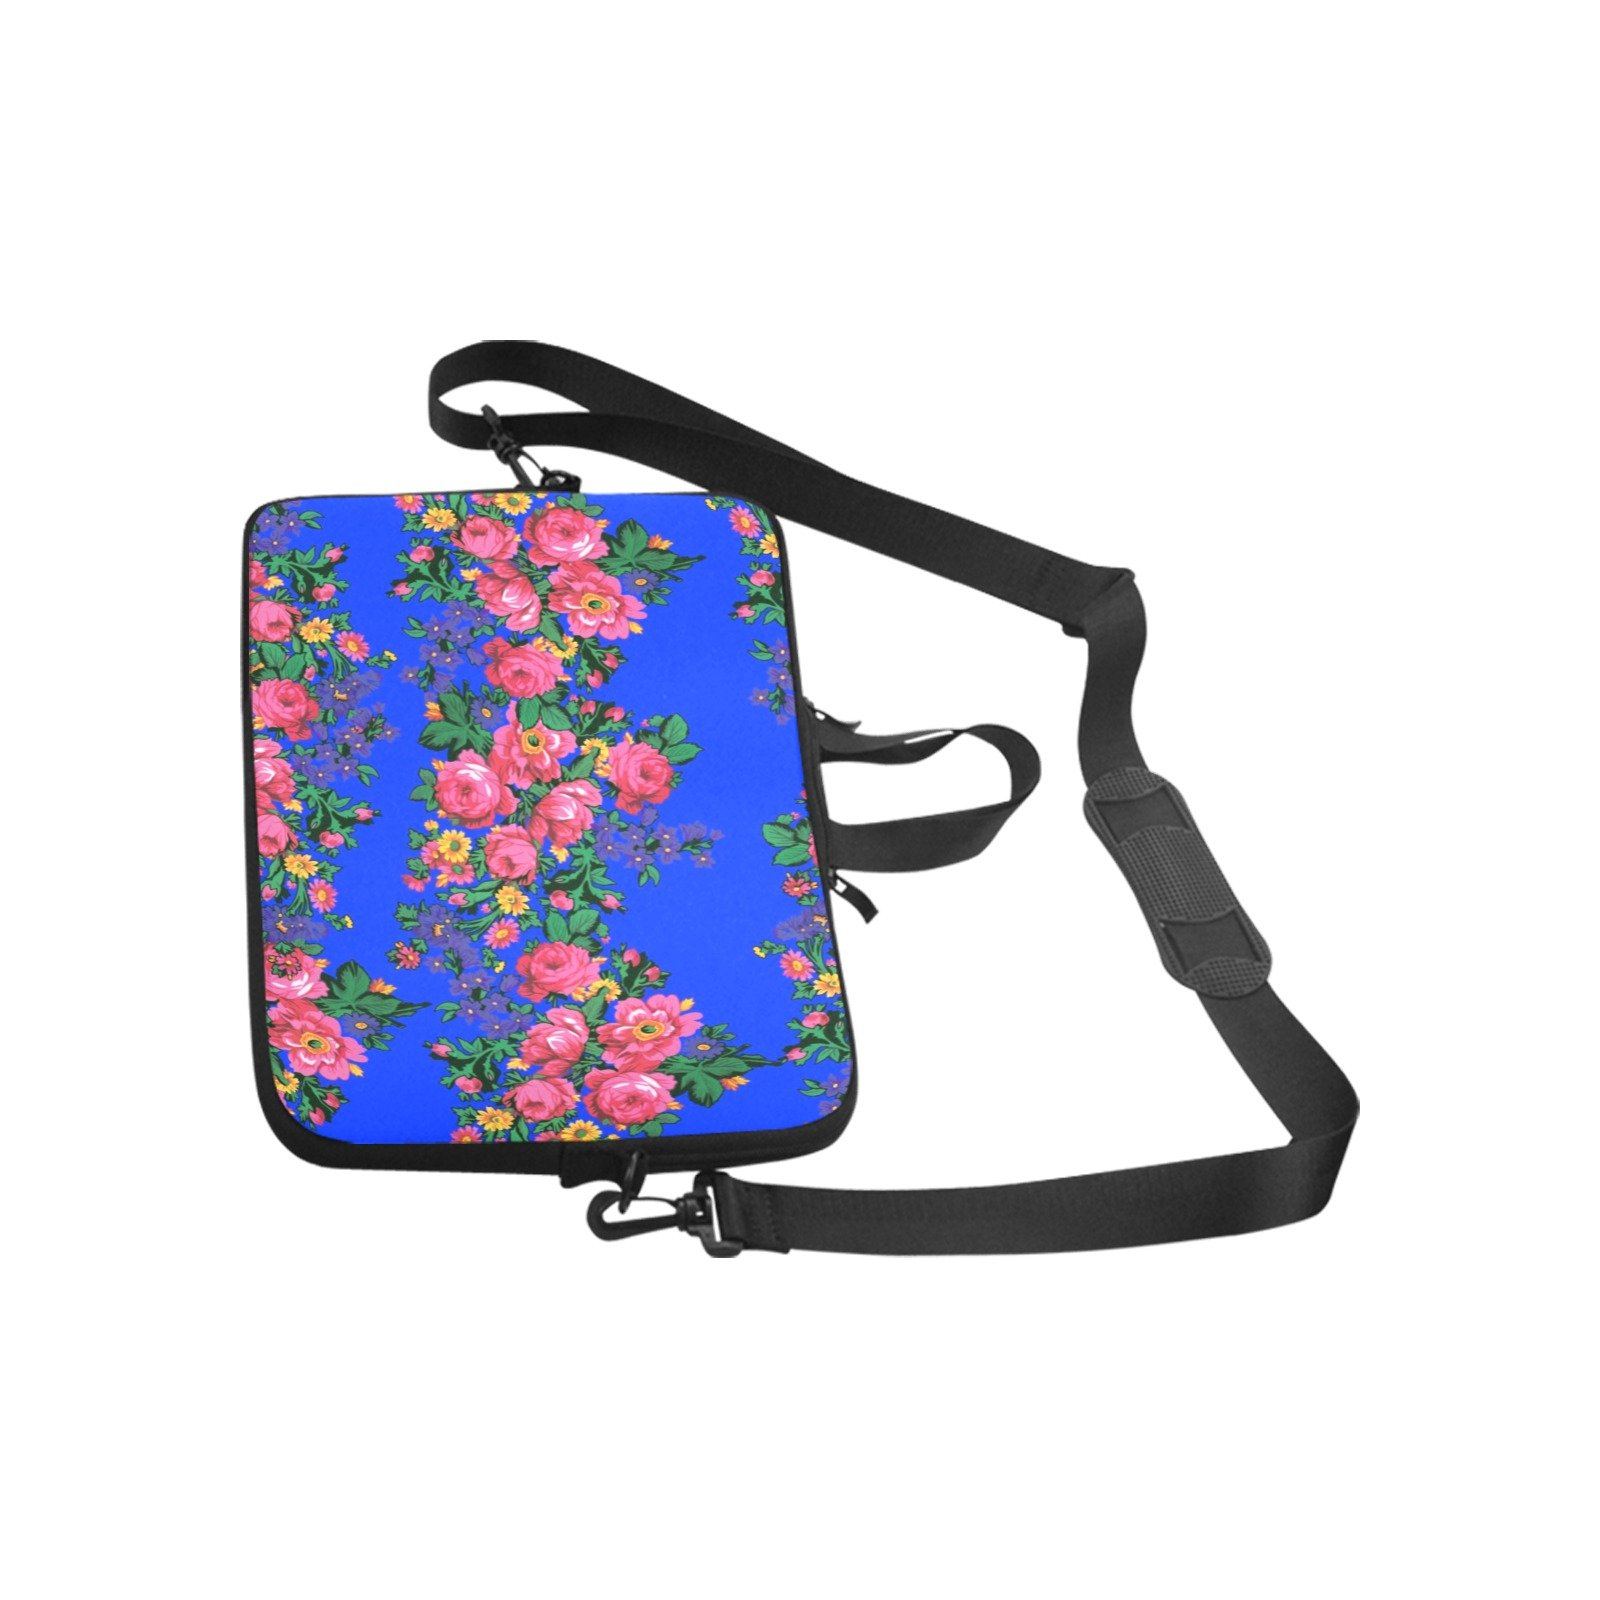 Kokum's Revenge Royal Laptop Handbags 10" bag e-joyer 